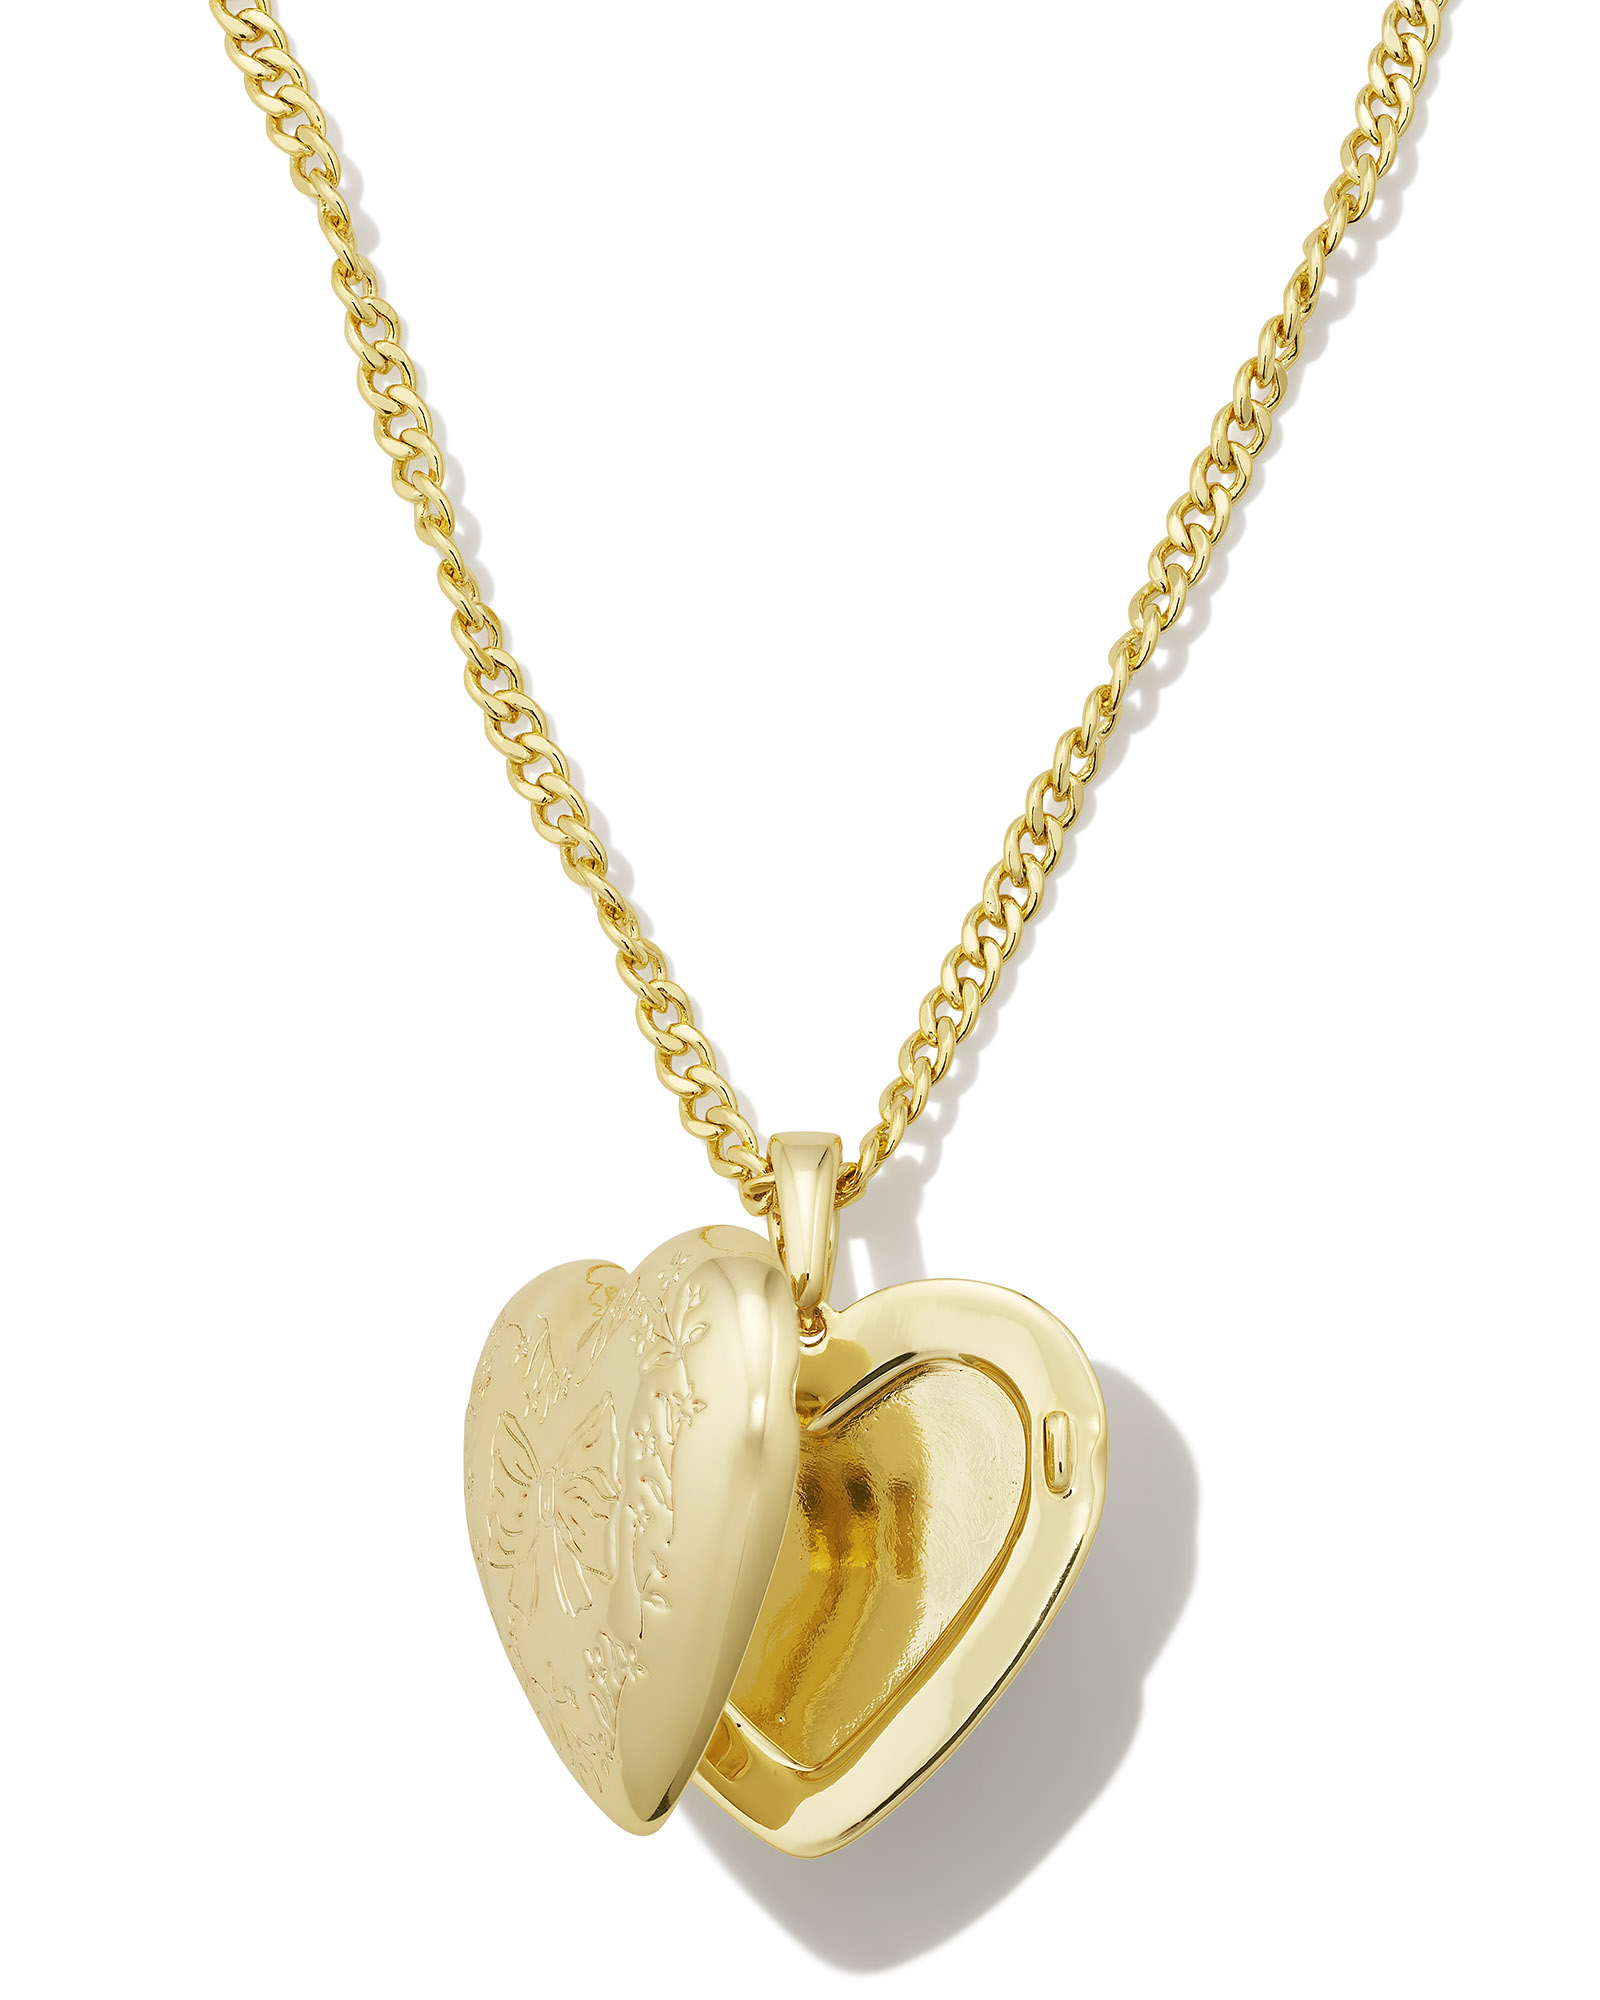 Kendra Scott x LoveShackFancy Locket Necklace in Gold | Kendra Scott